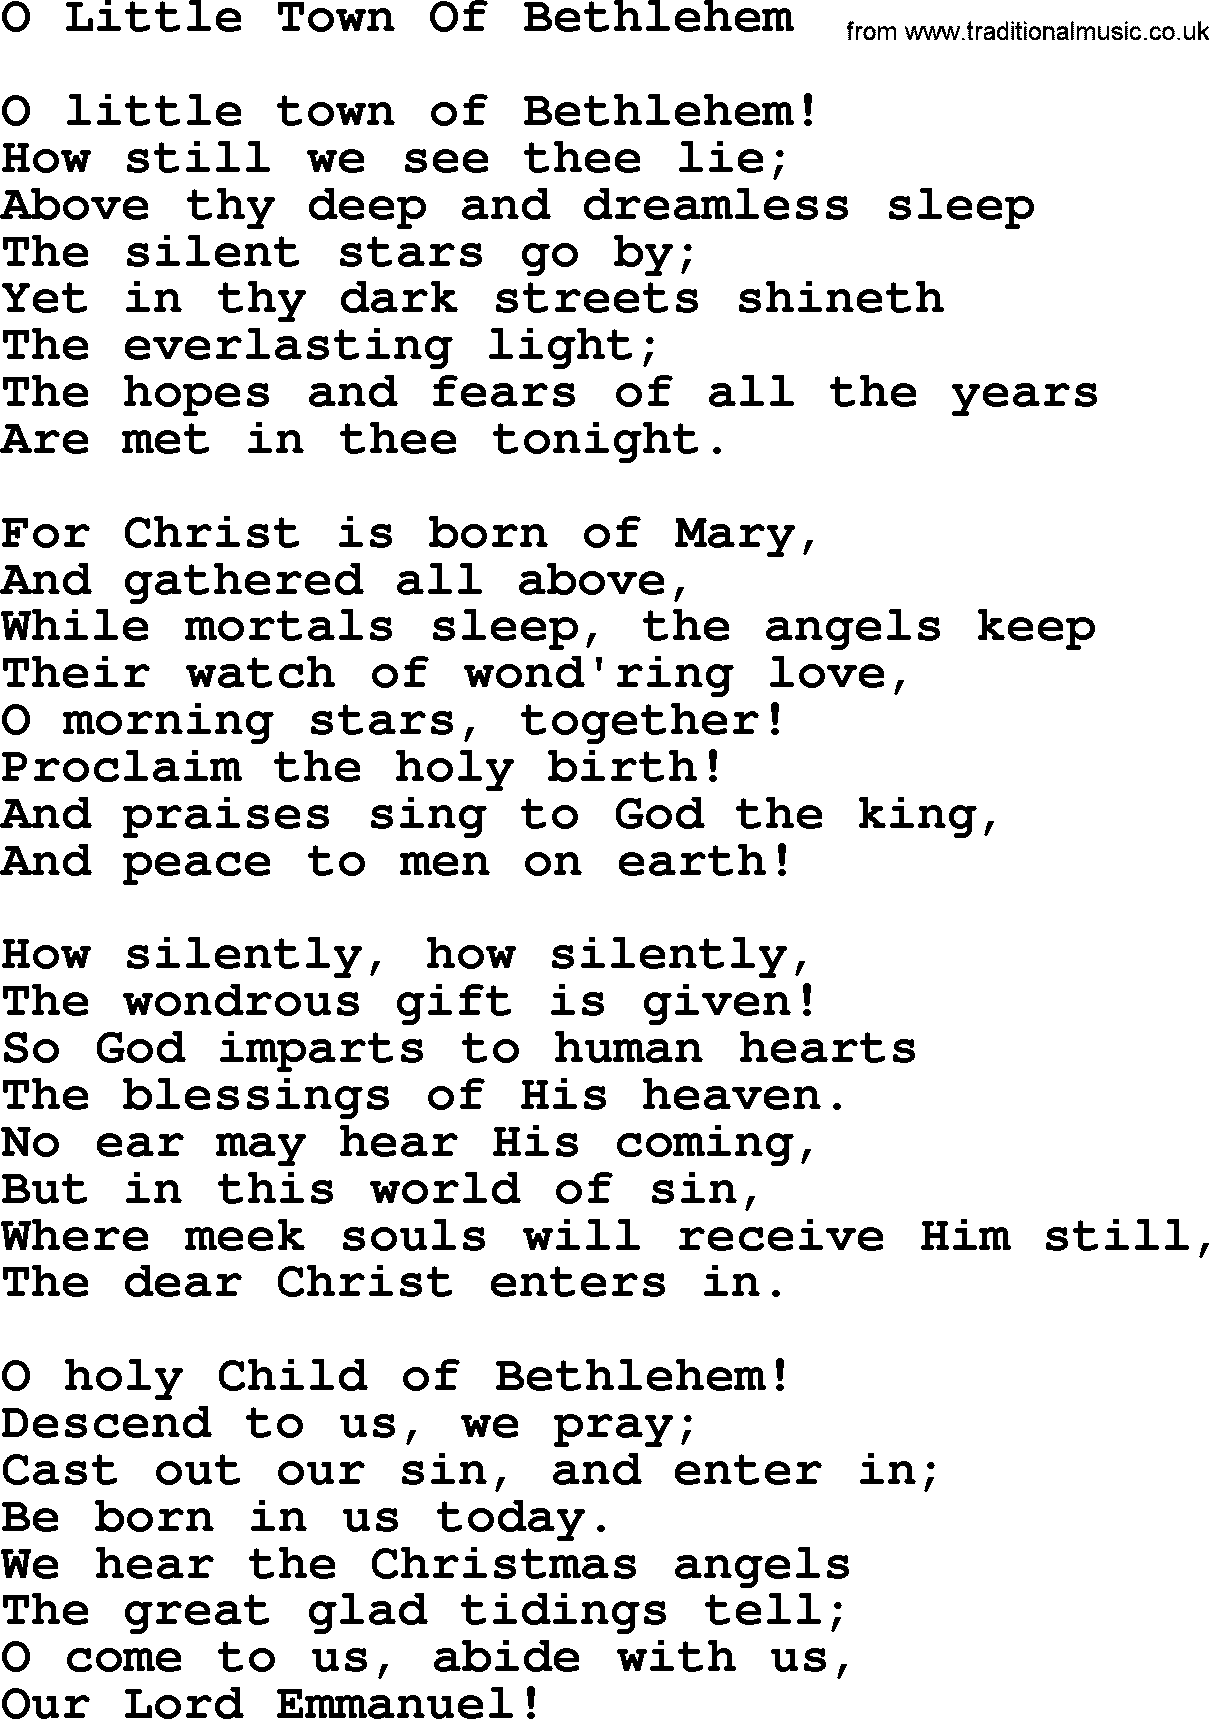 Catholic Hymns Song O Little Town Of Bethlehem Lyrics And Pdf